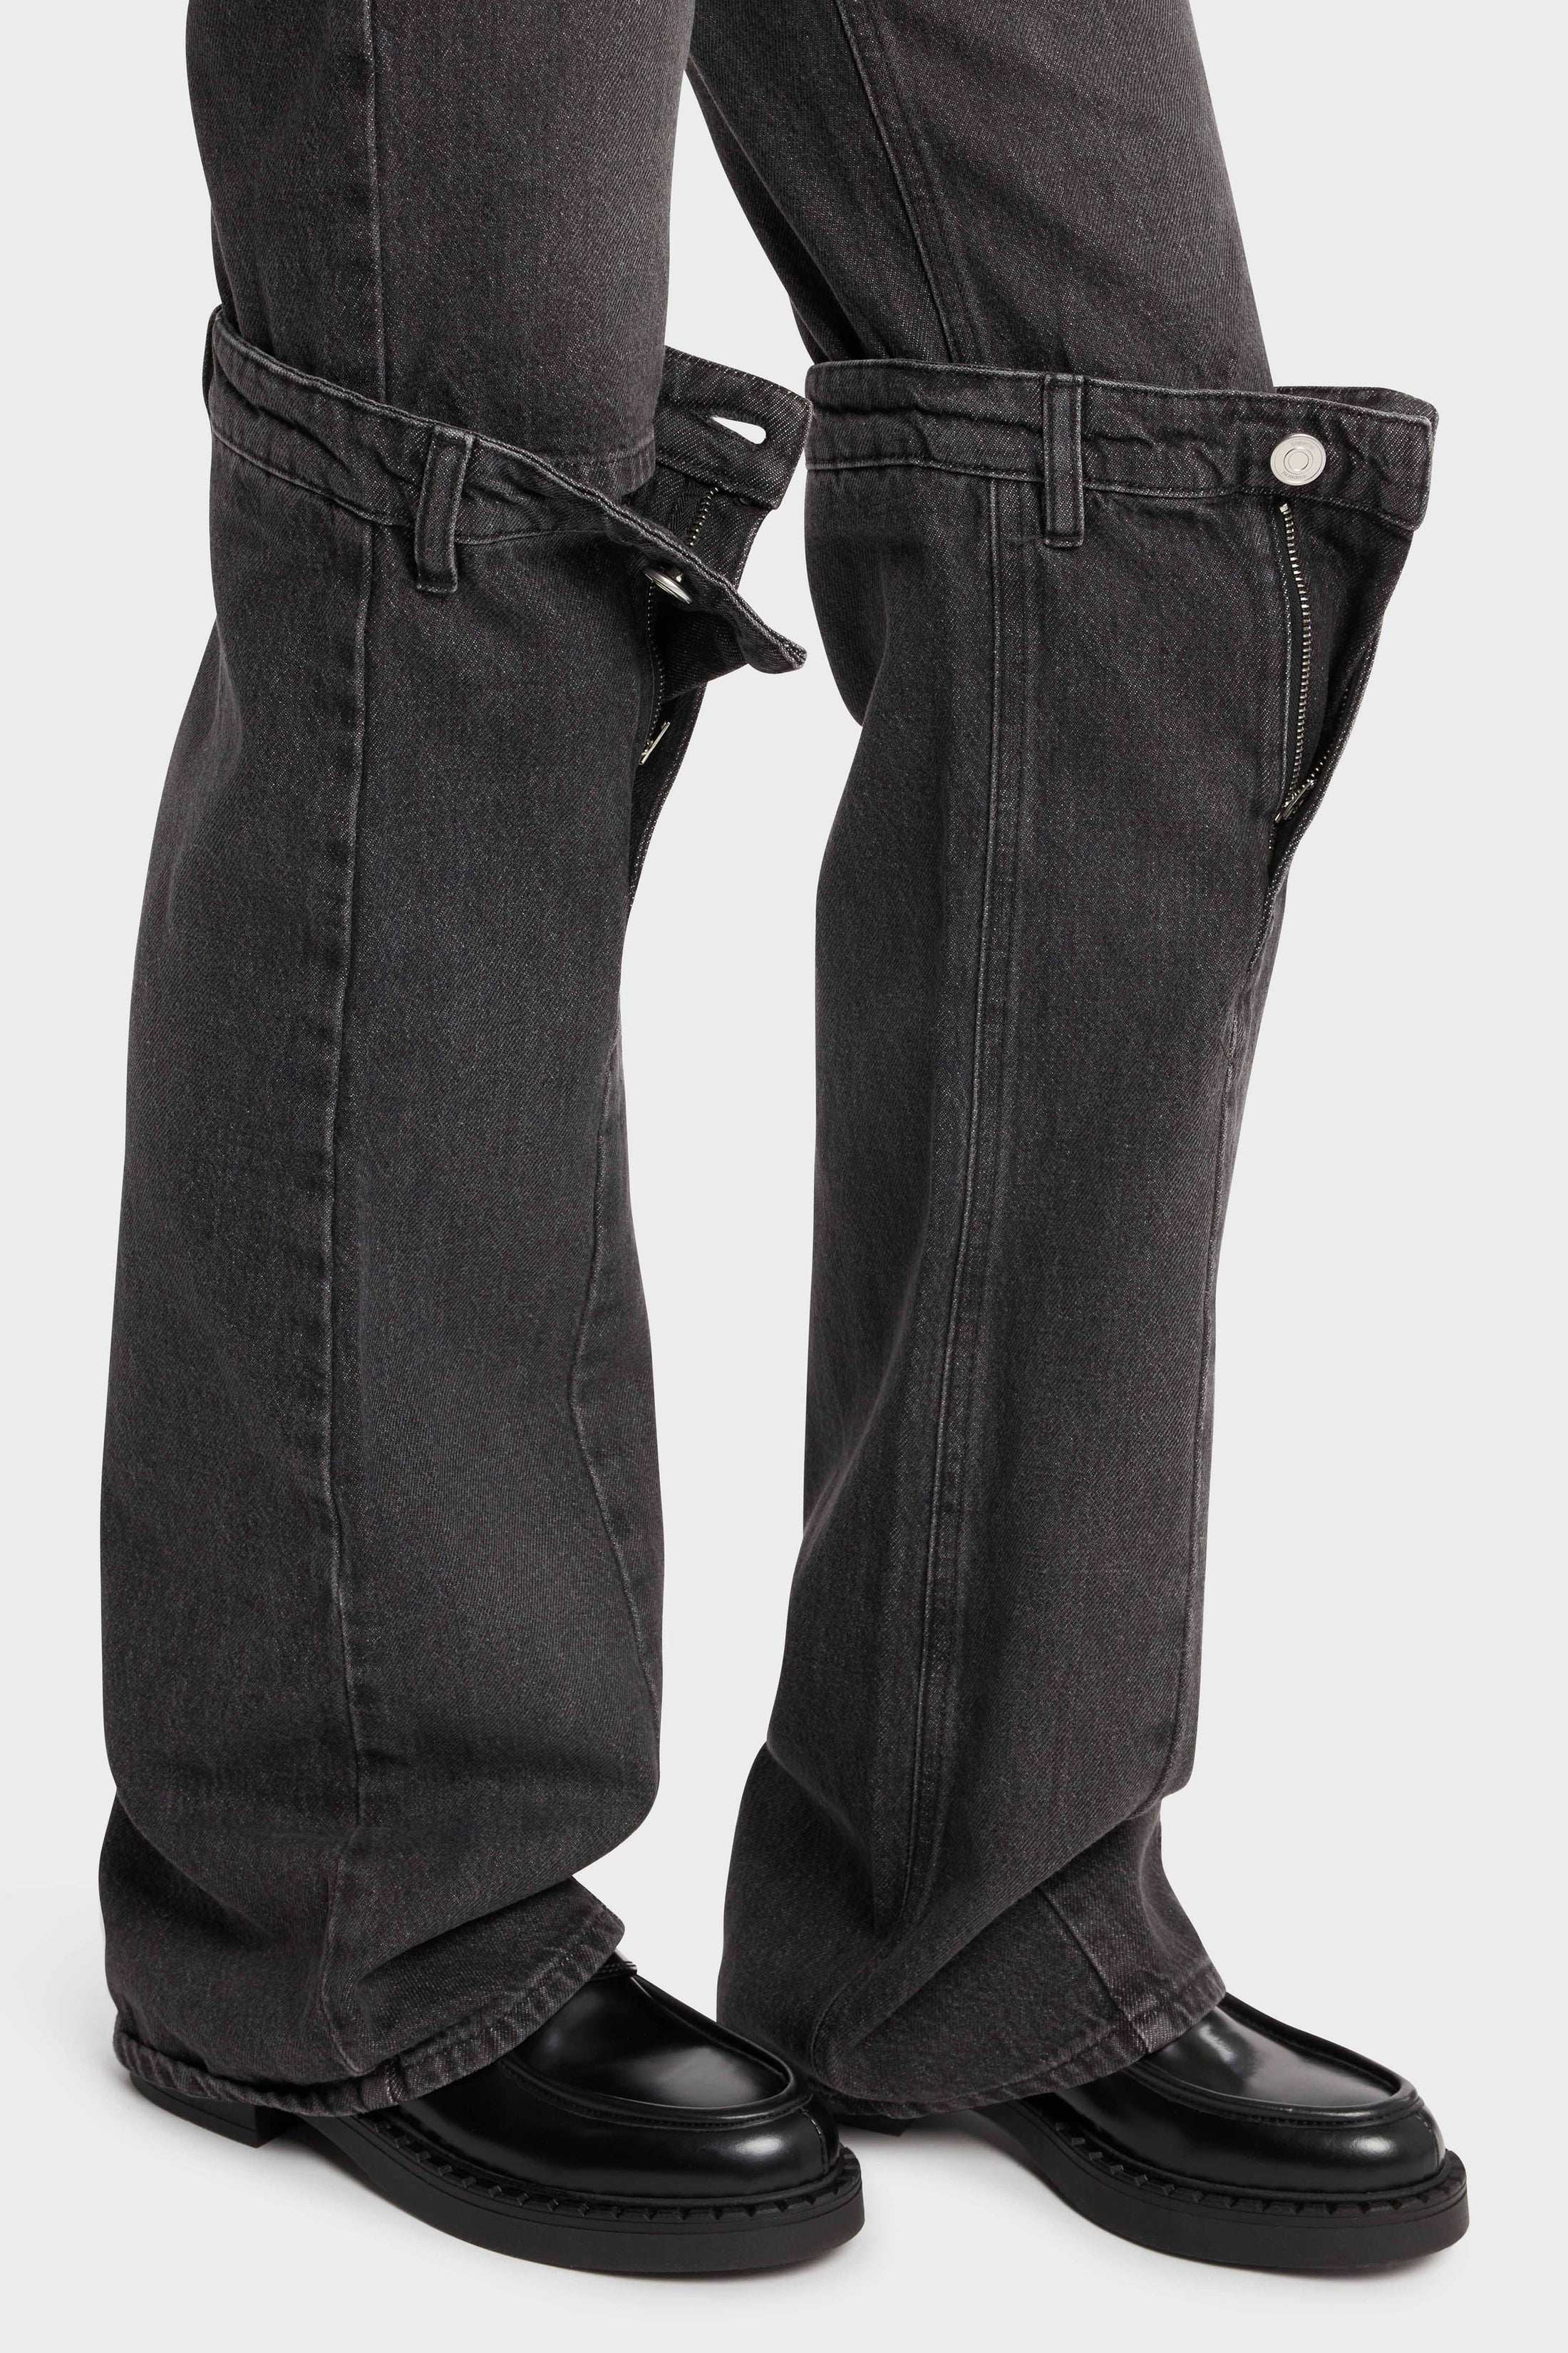 Dark grey jeans with open knee engineering.